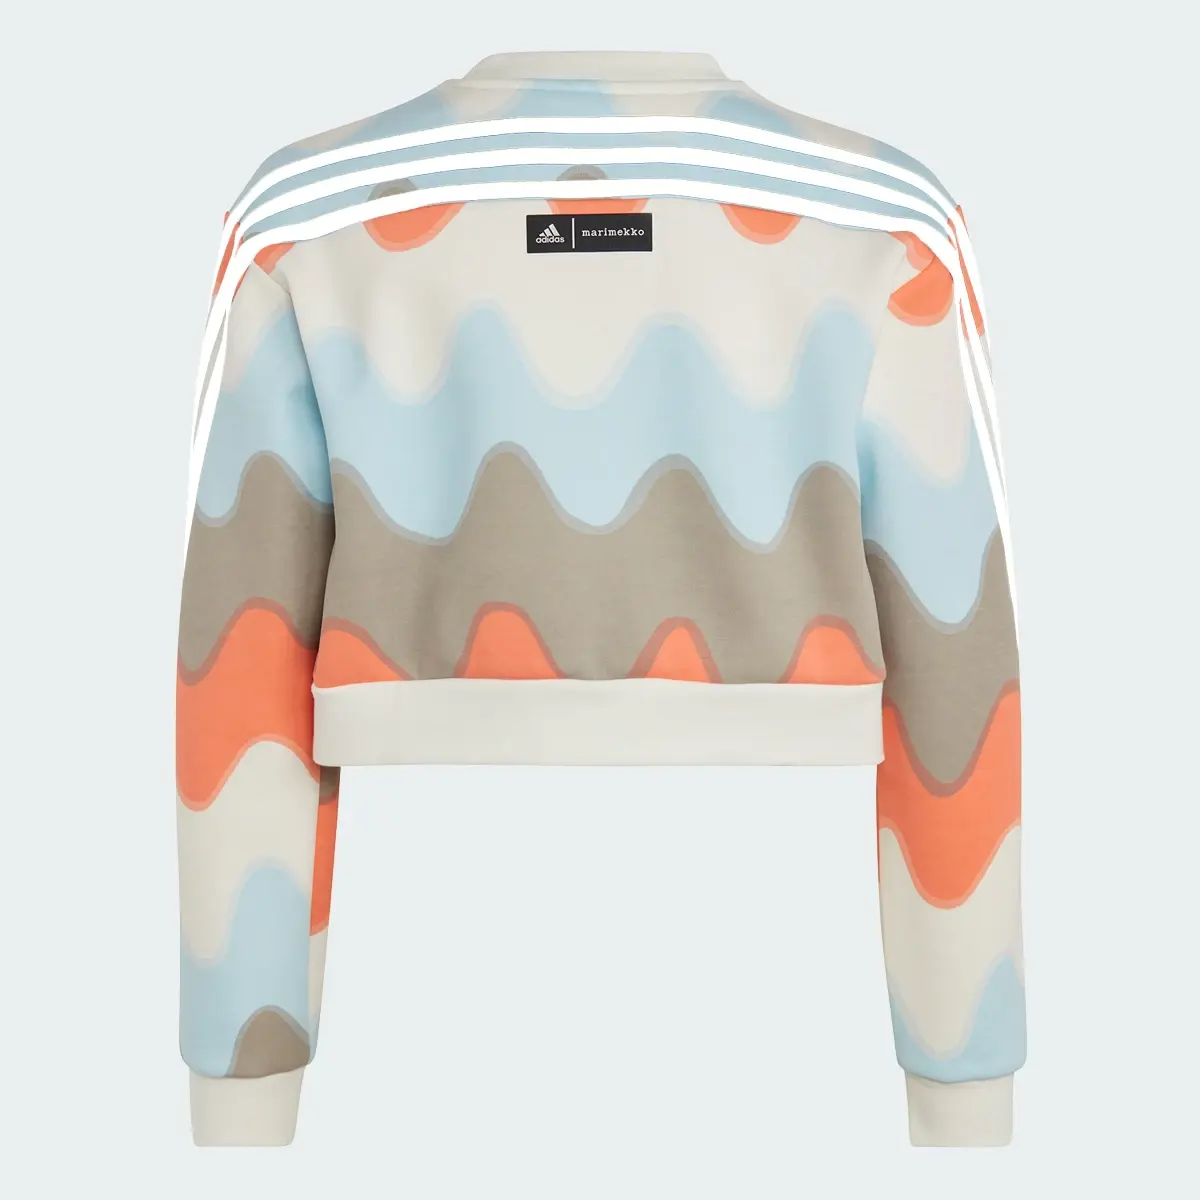 Adidas Marimekko Allover Print Cotton Sweatshirt. 2